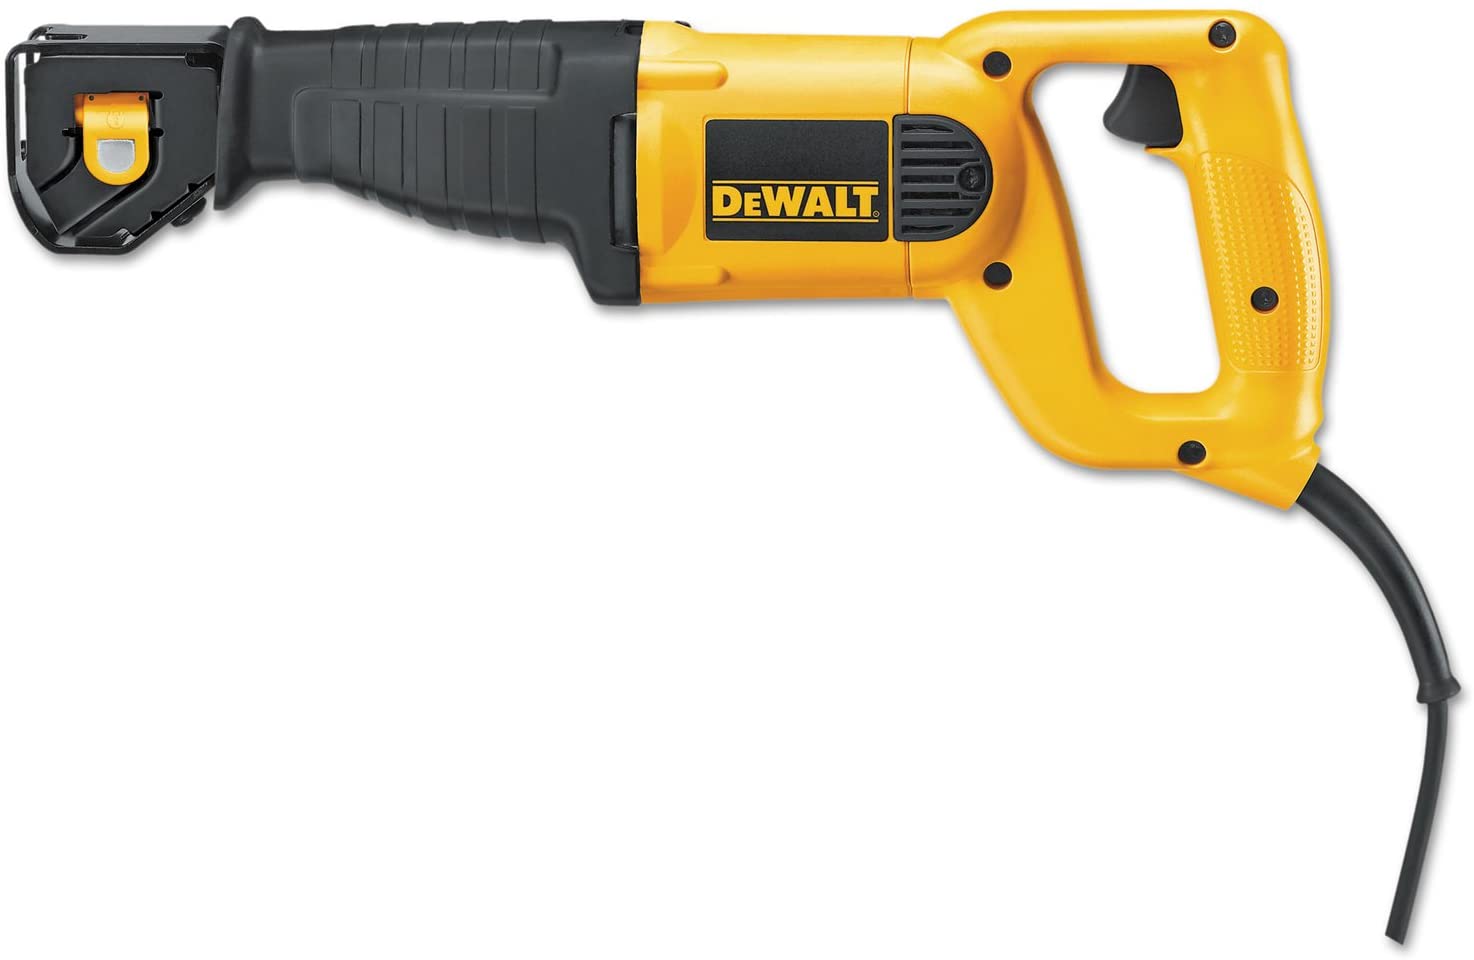 DEWALT Reciprocating Saw, 10-Amp (DWE304)